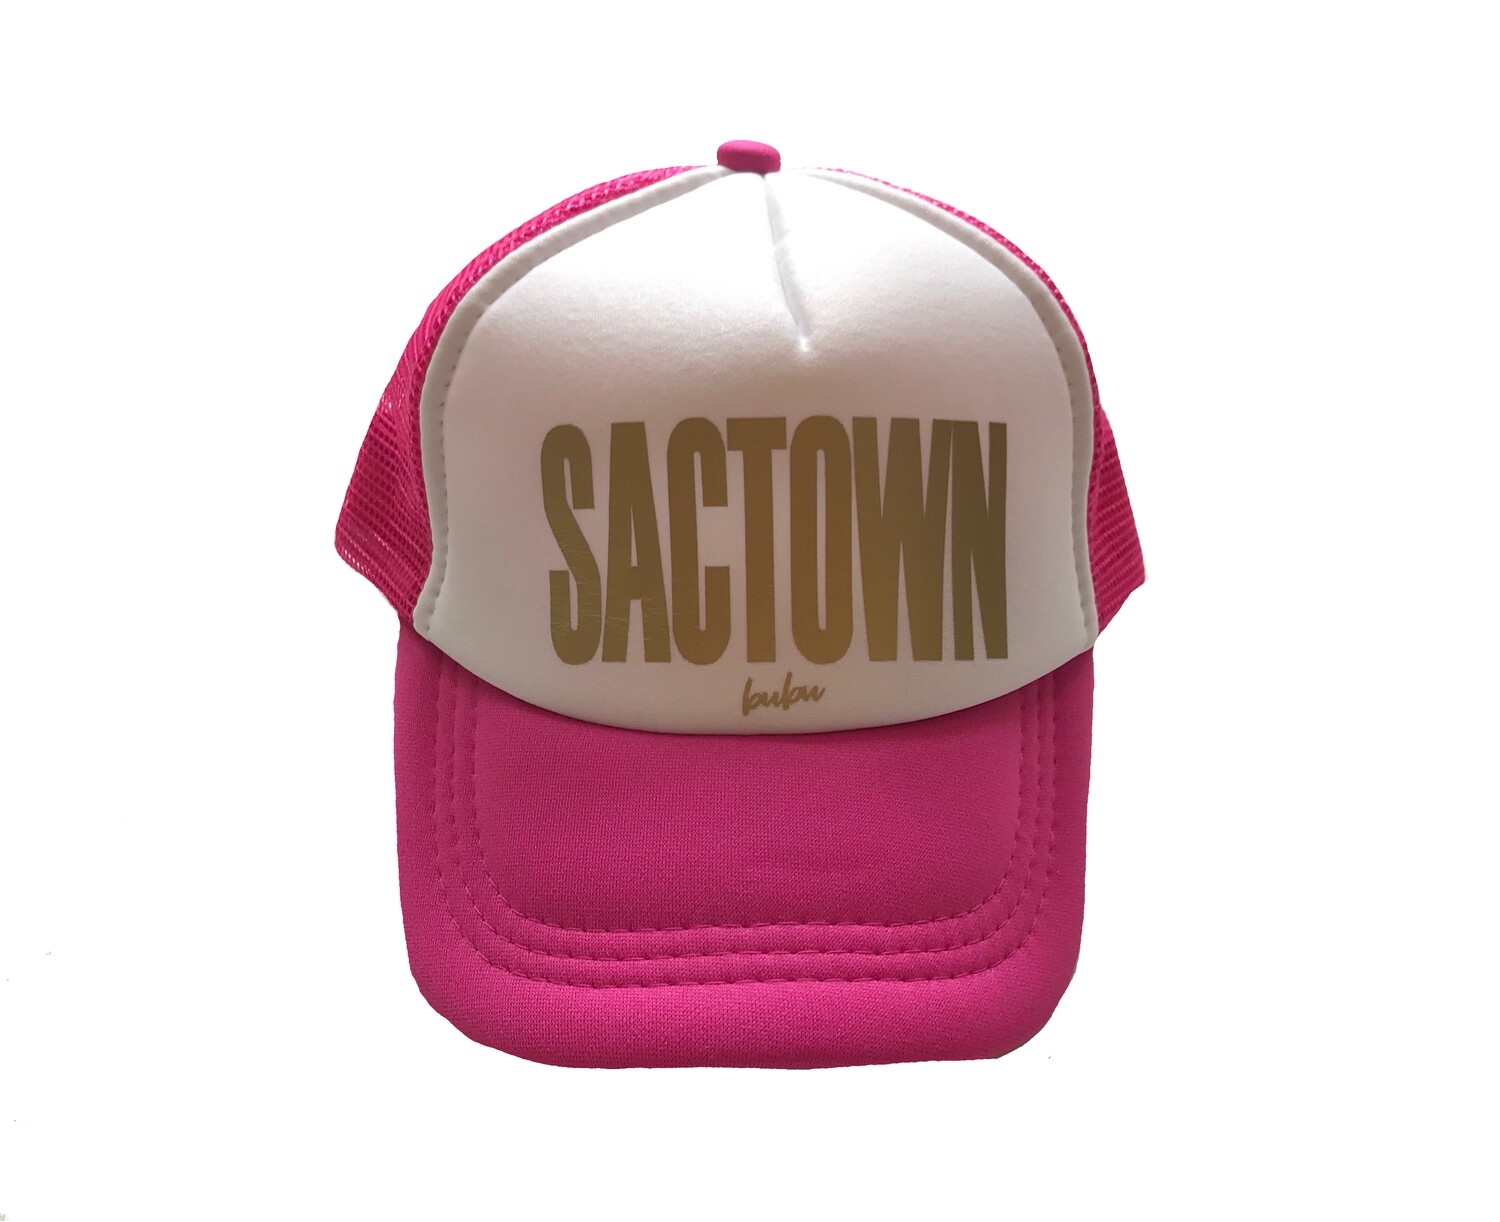 Bubu "Sactown" Trucker Hat - Pink